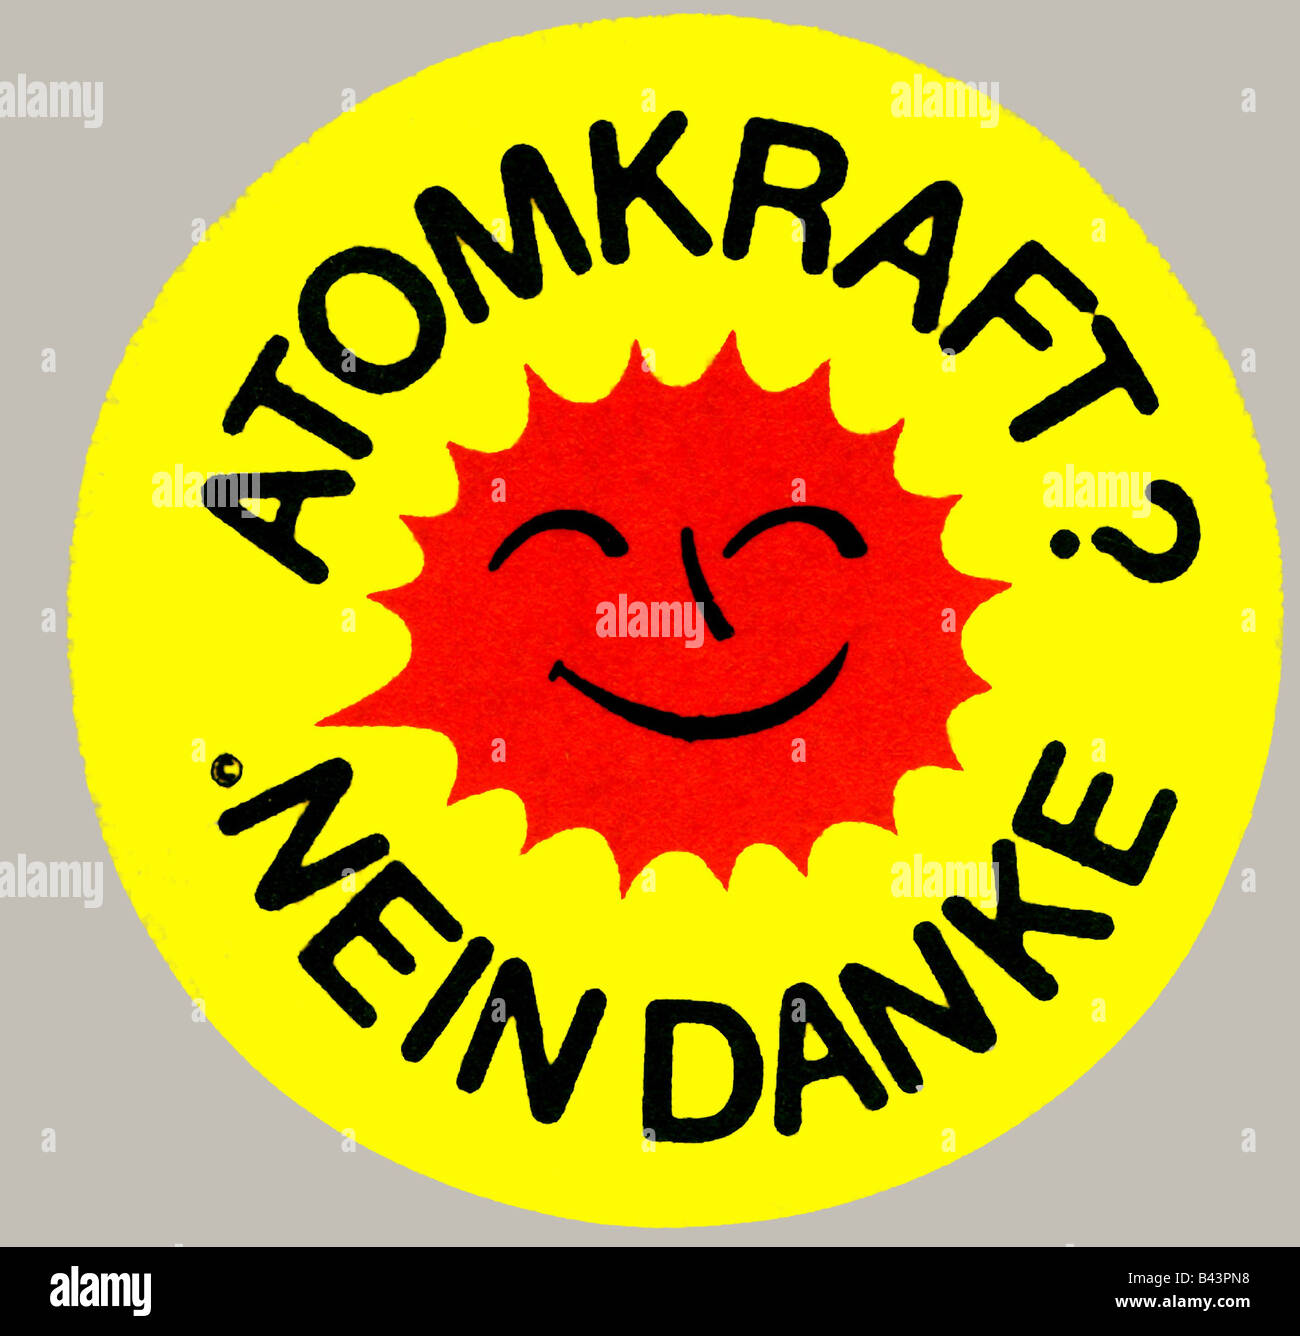 Atomkraft nein Danke Postcard for Sale by VandvanDolphin